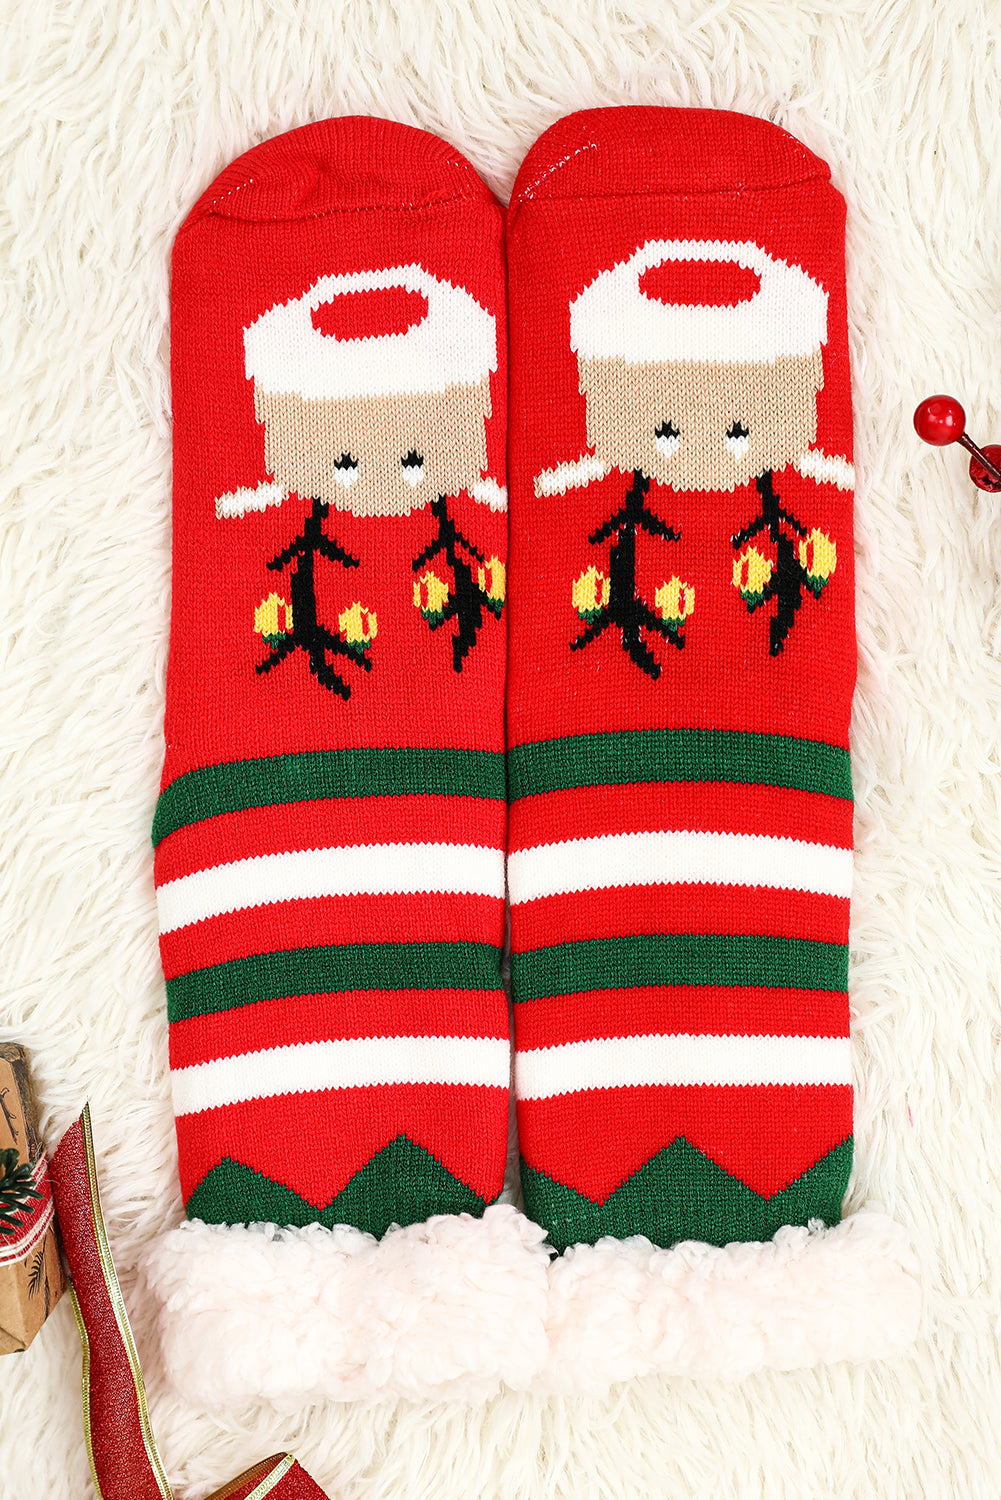 Fiery Red Christmas Cartoon Pattern Woolen Knit Socks